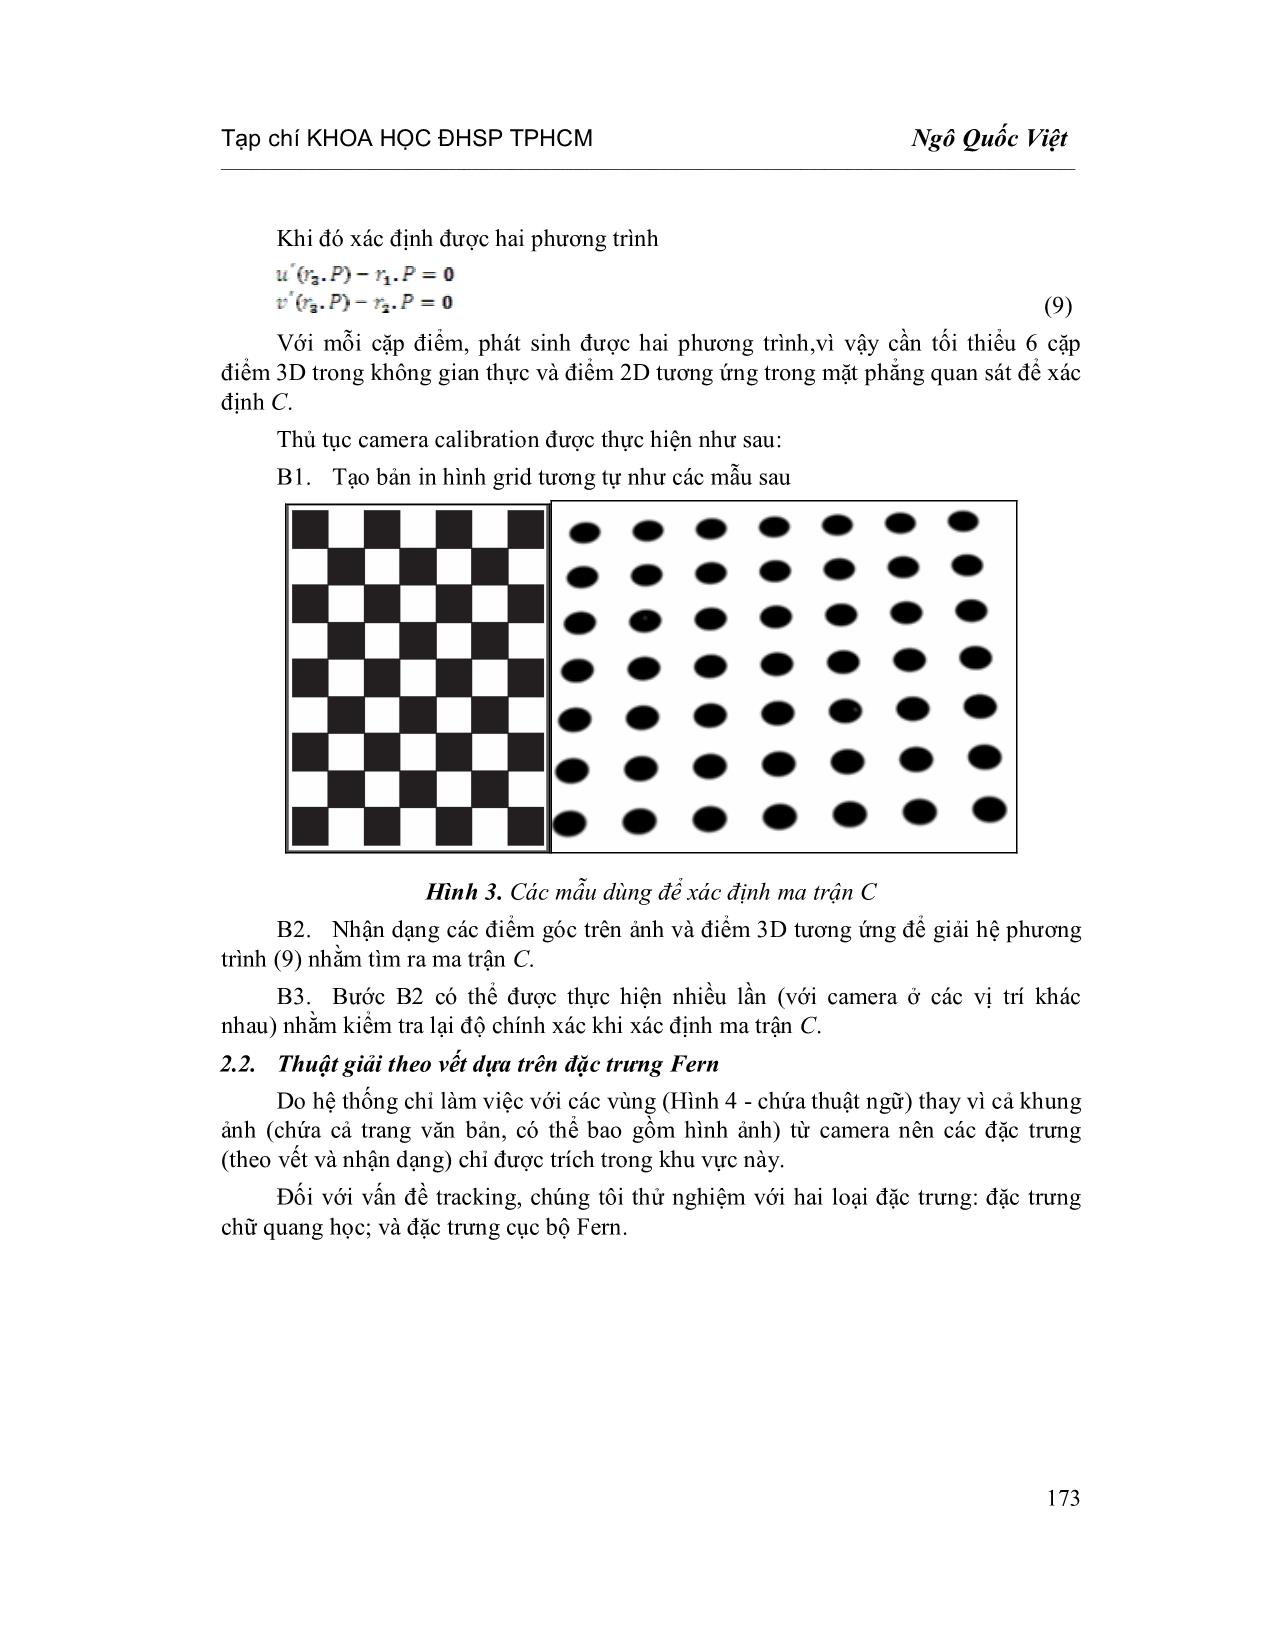 Kết hợp đặc trưng cục bộ và nhận dạng chữ quang học trong bài toán tăng cường hình ảnh cho tài liệu văn bản trang 5